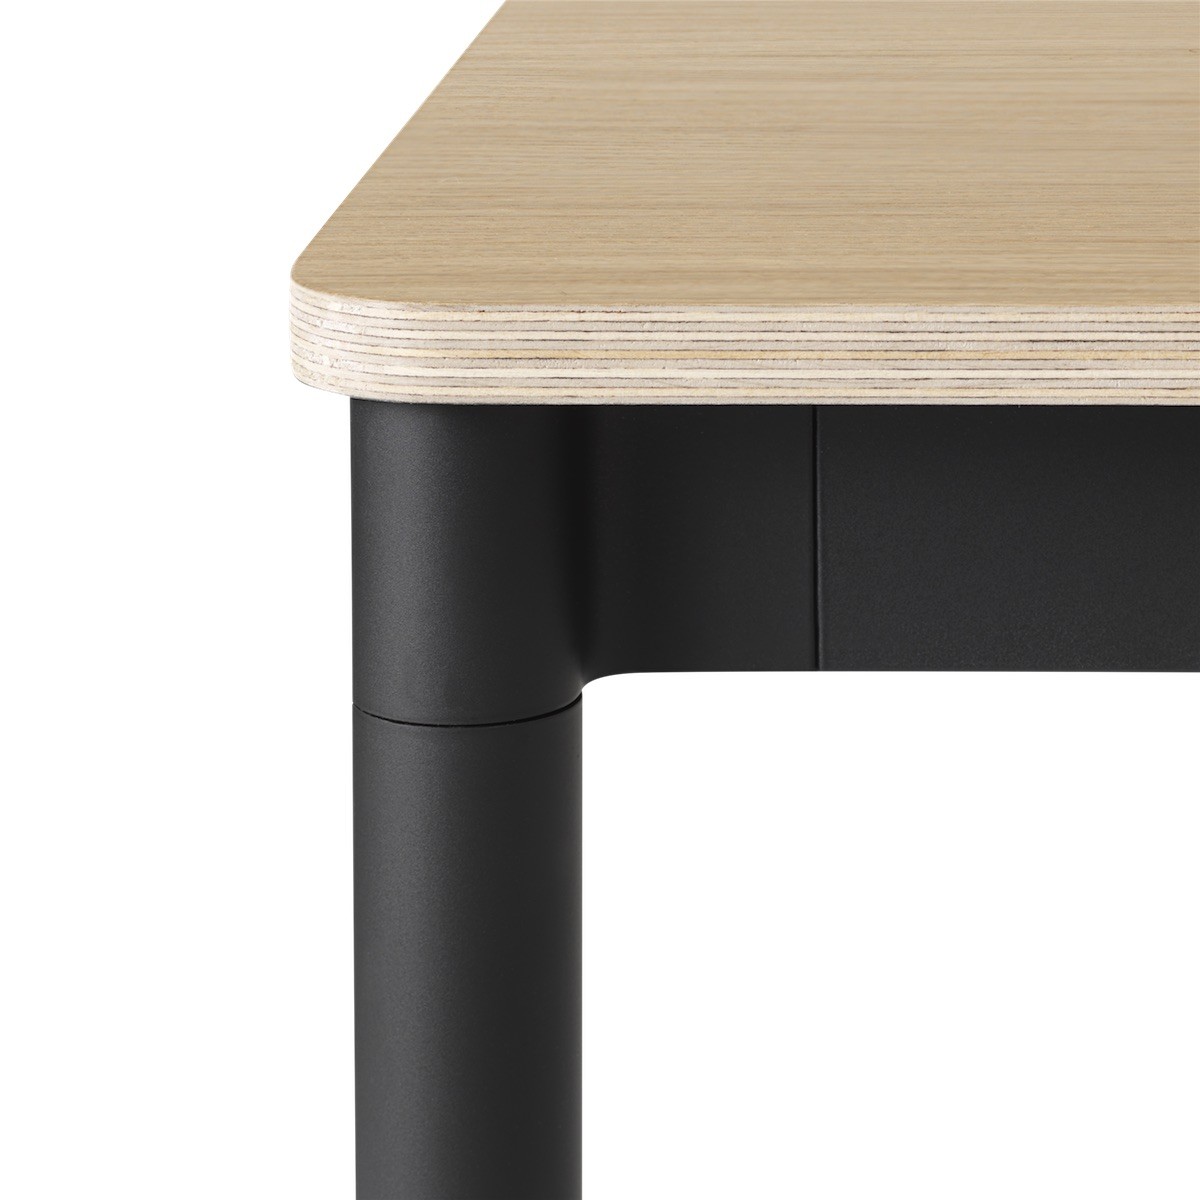 Chêne / Bois / Noir – Table Base 190 x 85 x H73 cm